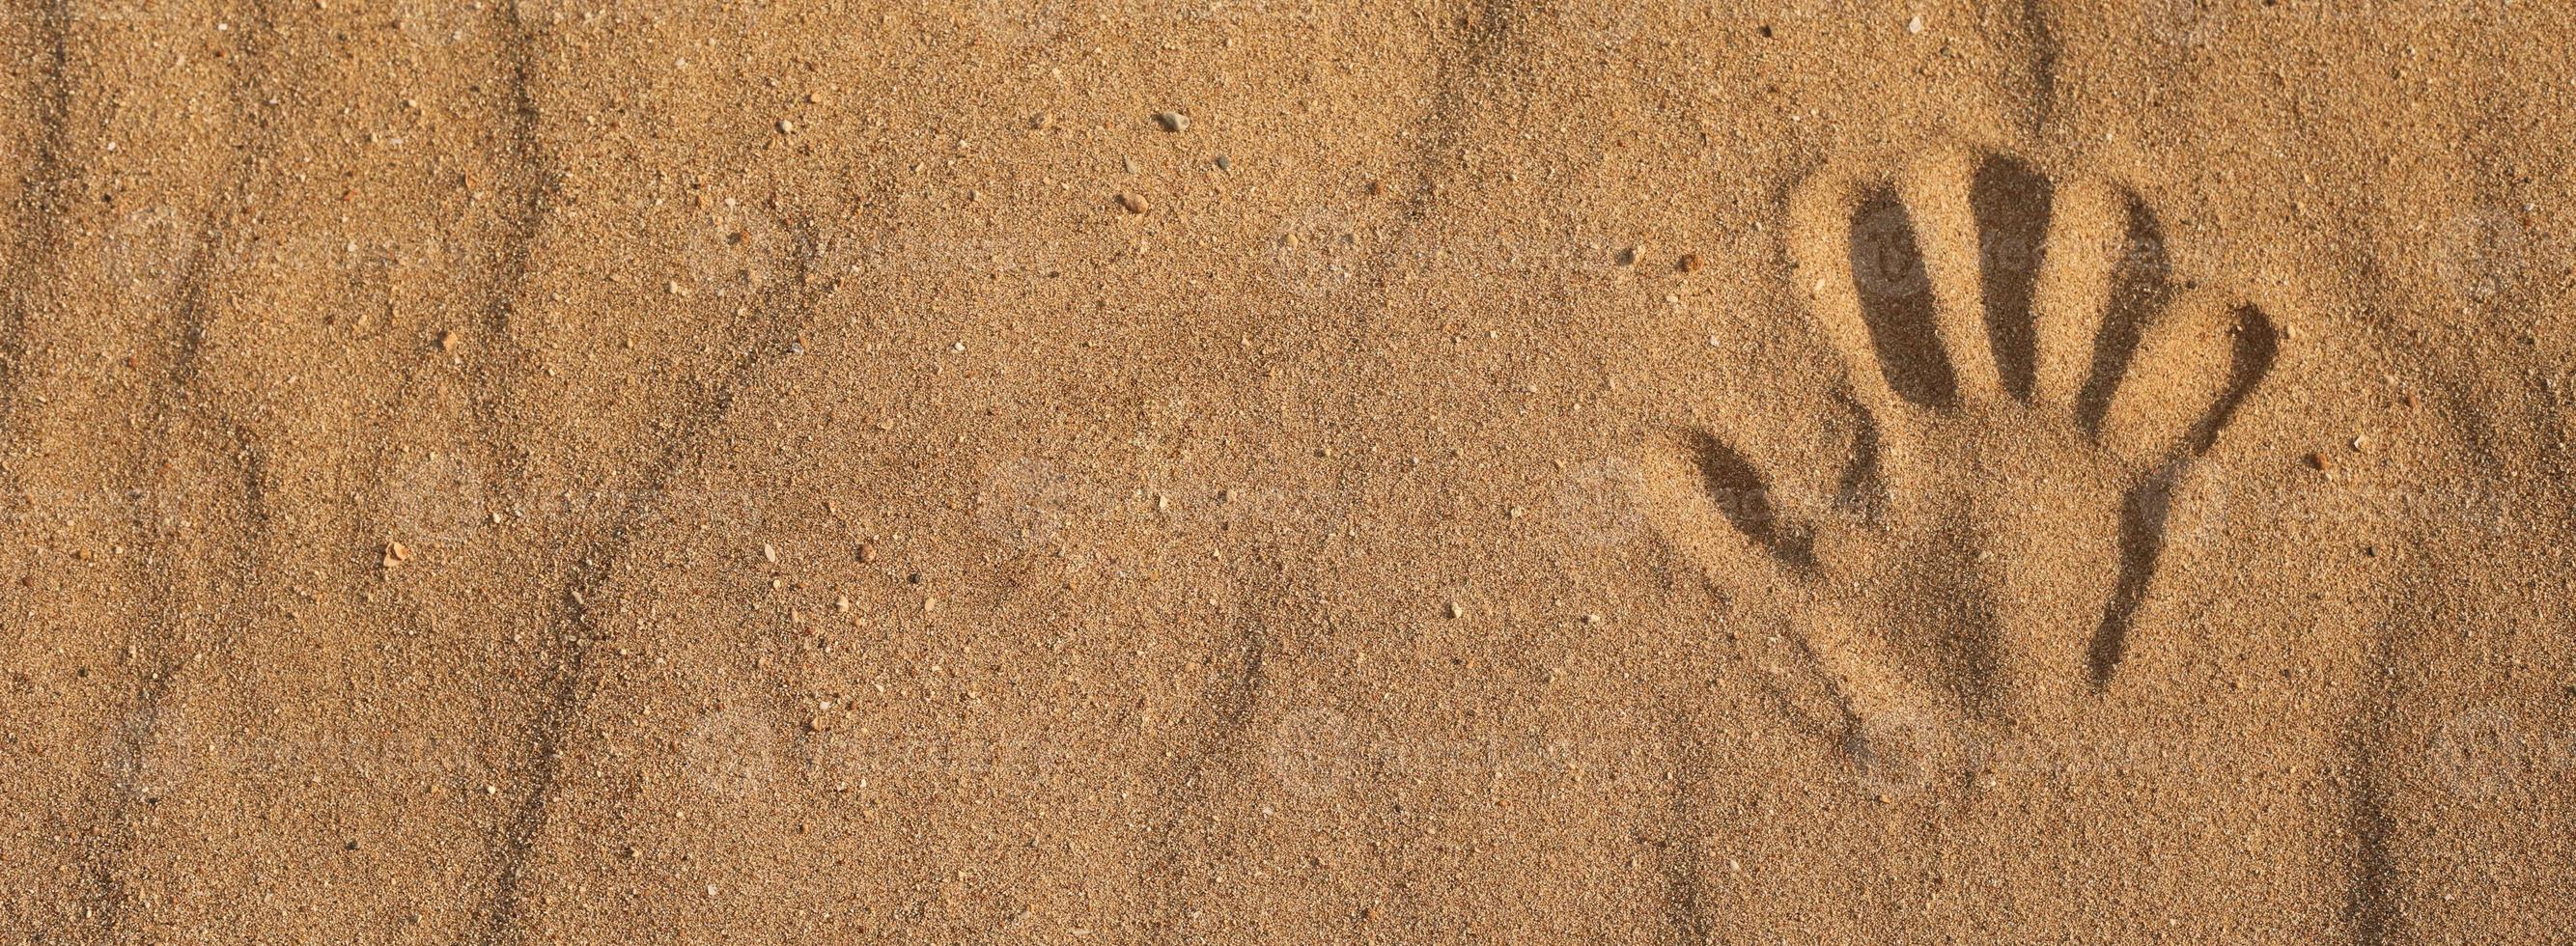 striscione impronta di mano sulla sabbia sulla spiaggia foto